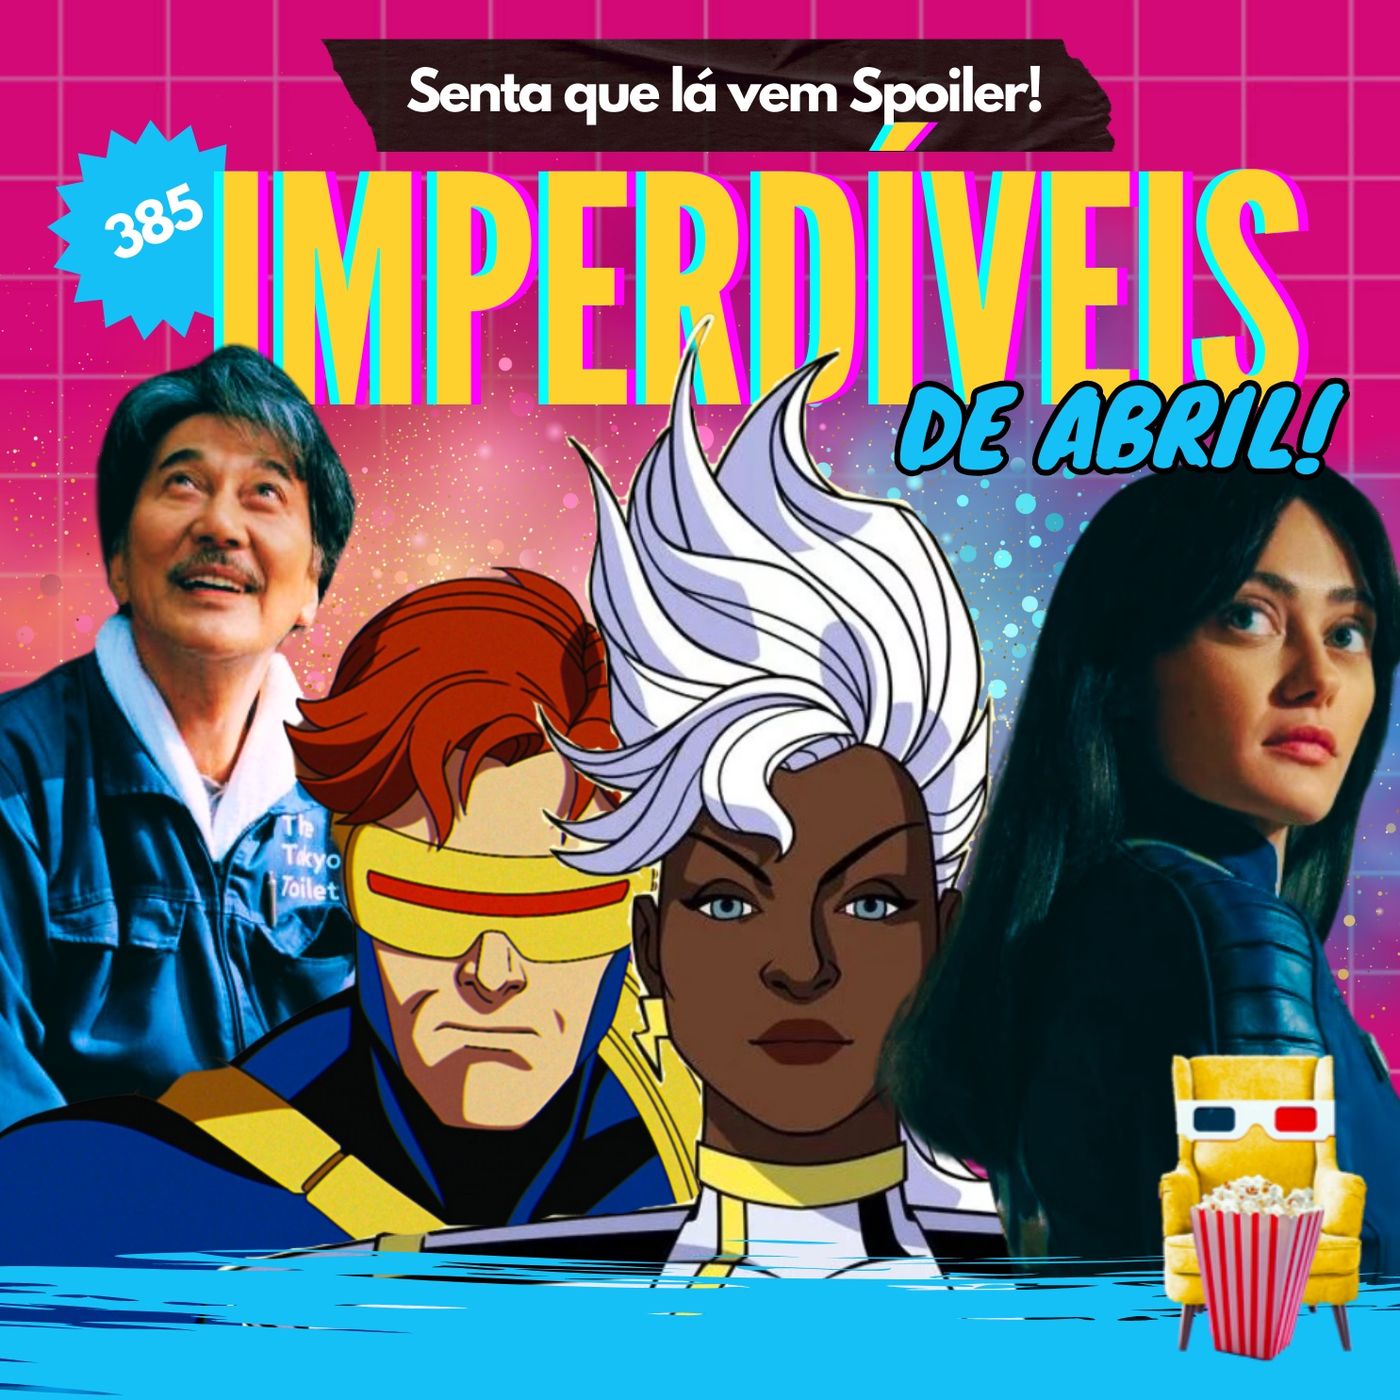 EP 385 – Imperdíveis de Abril (spoiler free!)